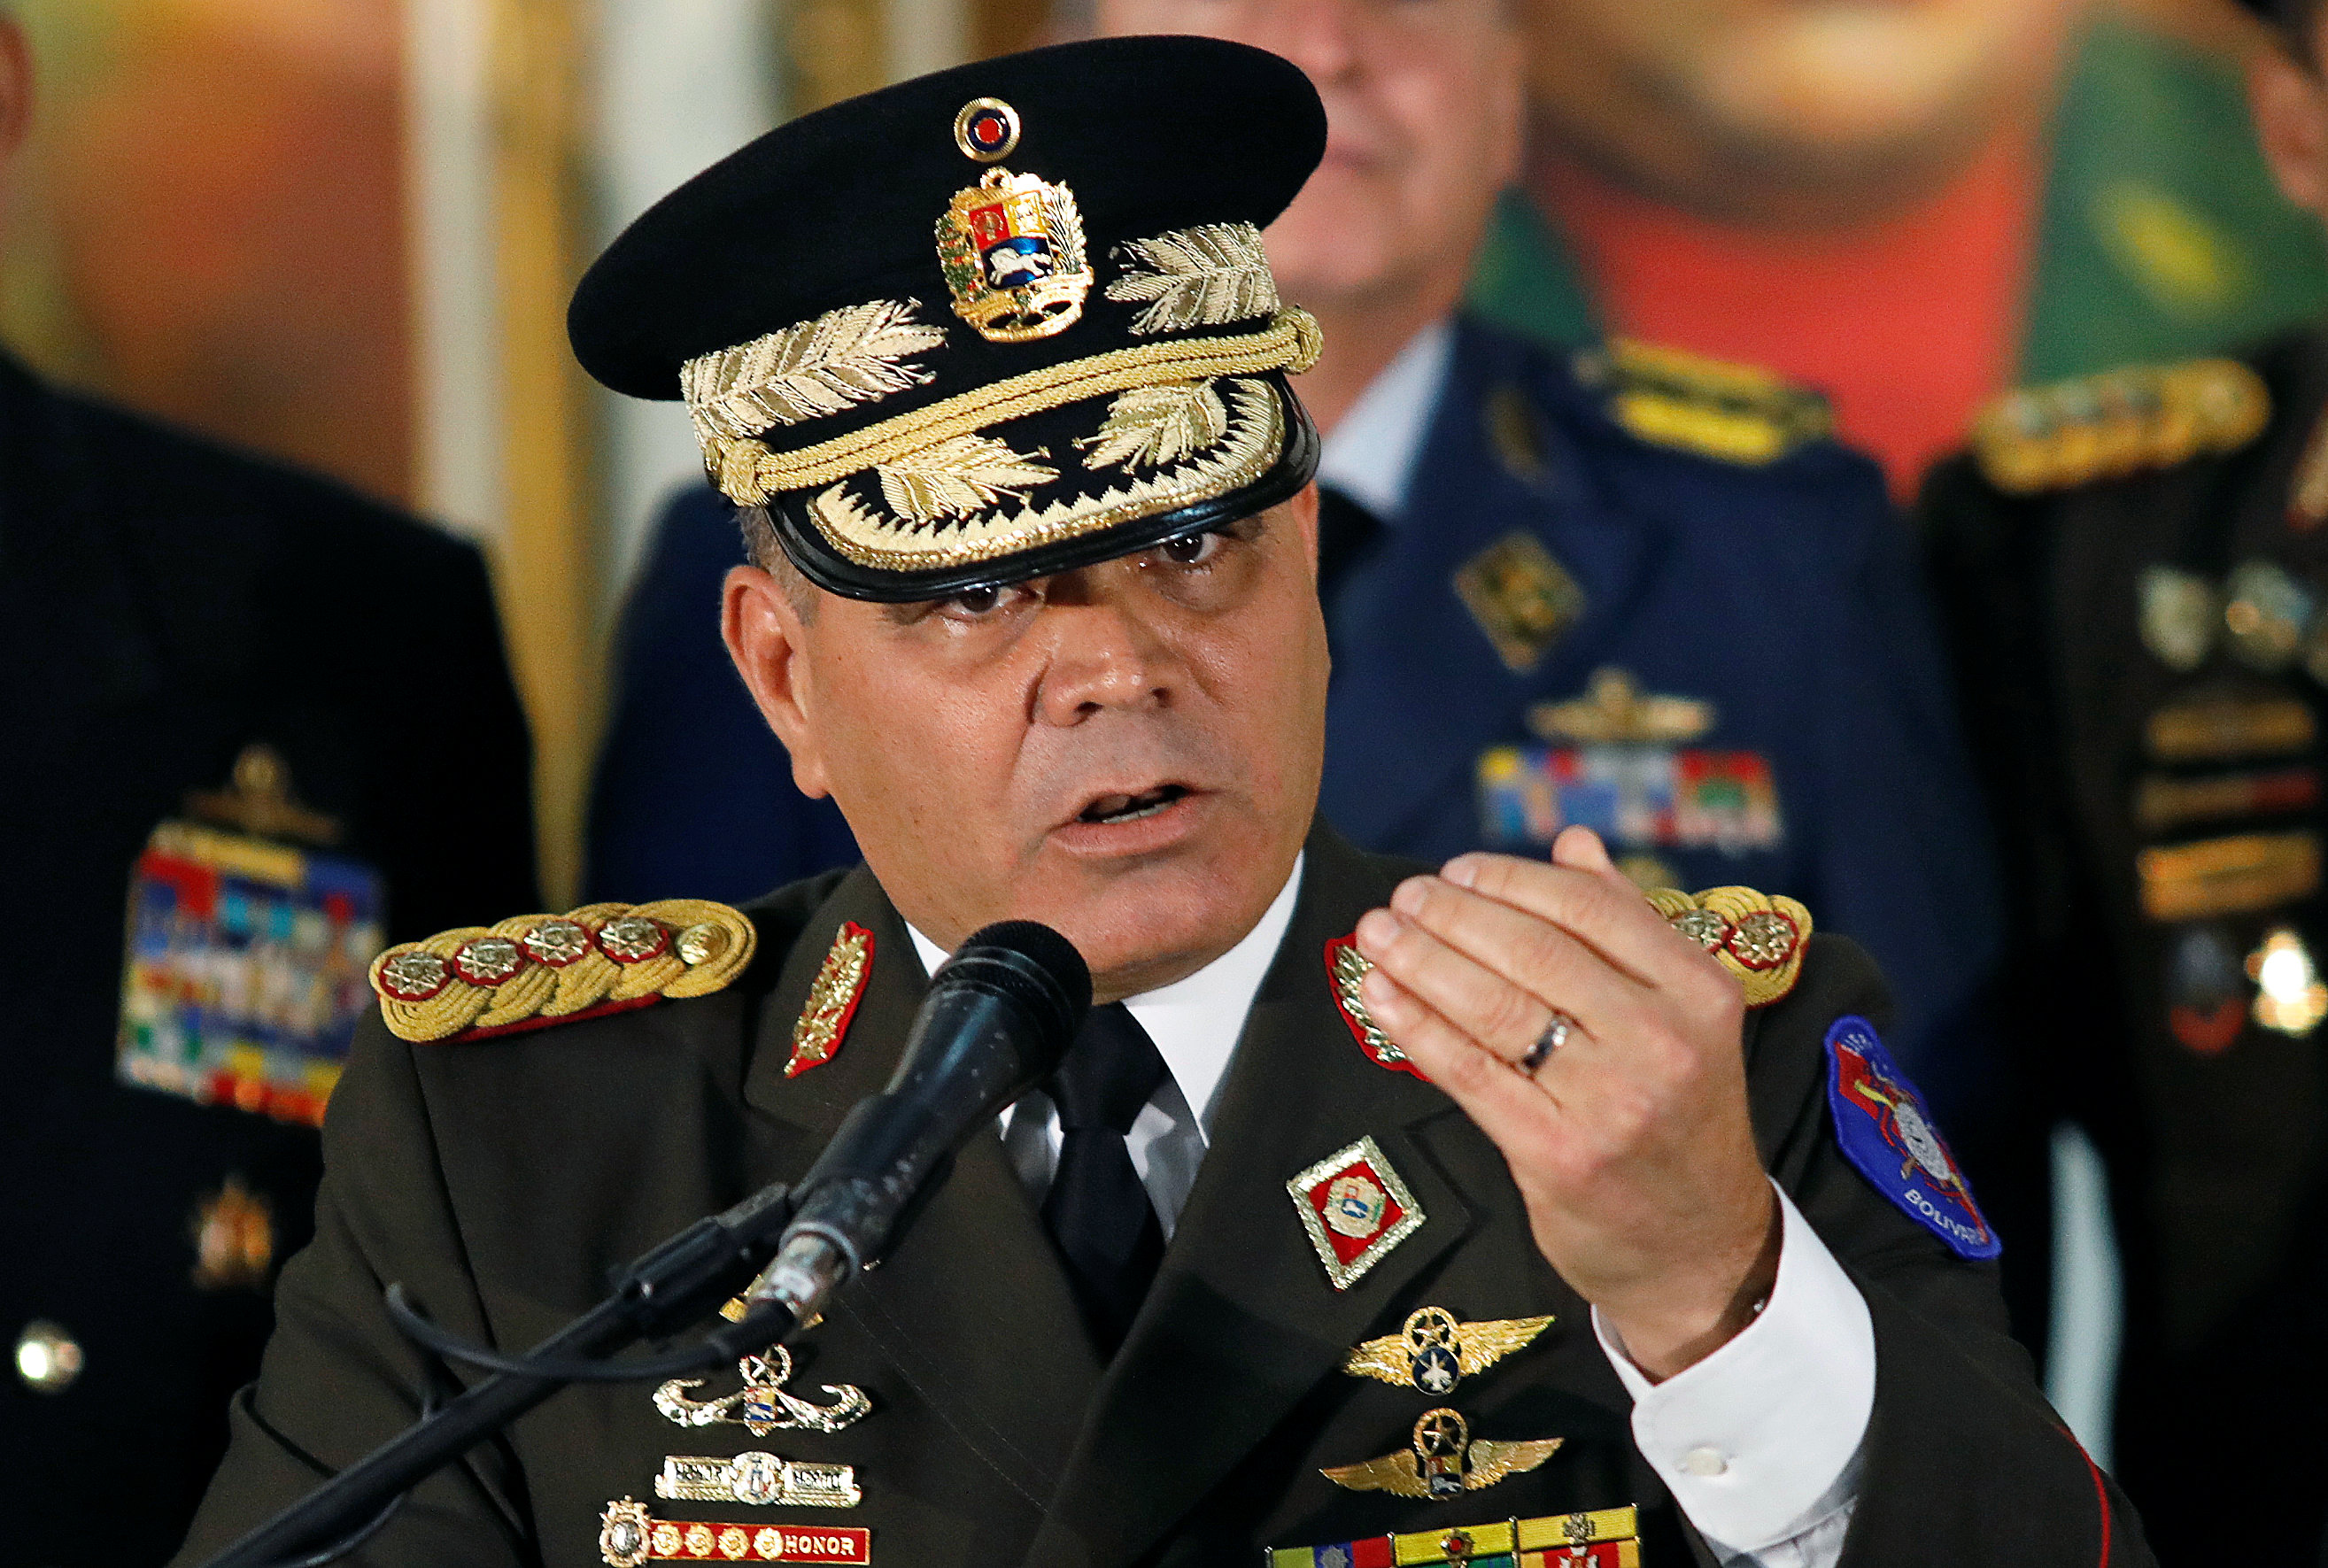 El chiste del día: Padrino López invitó al jefe del Comando Sur al país para “enseñarle” el alcance de la constitución